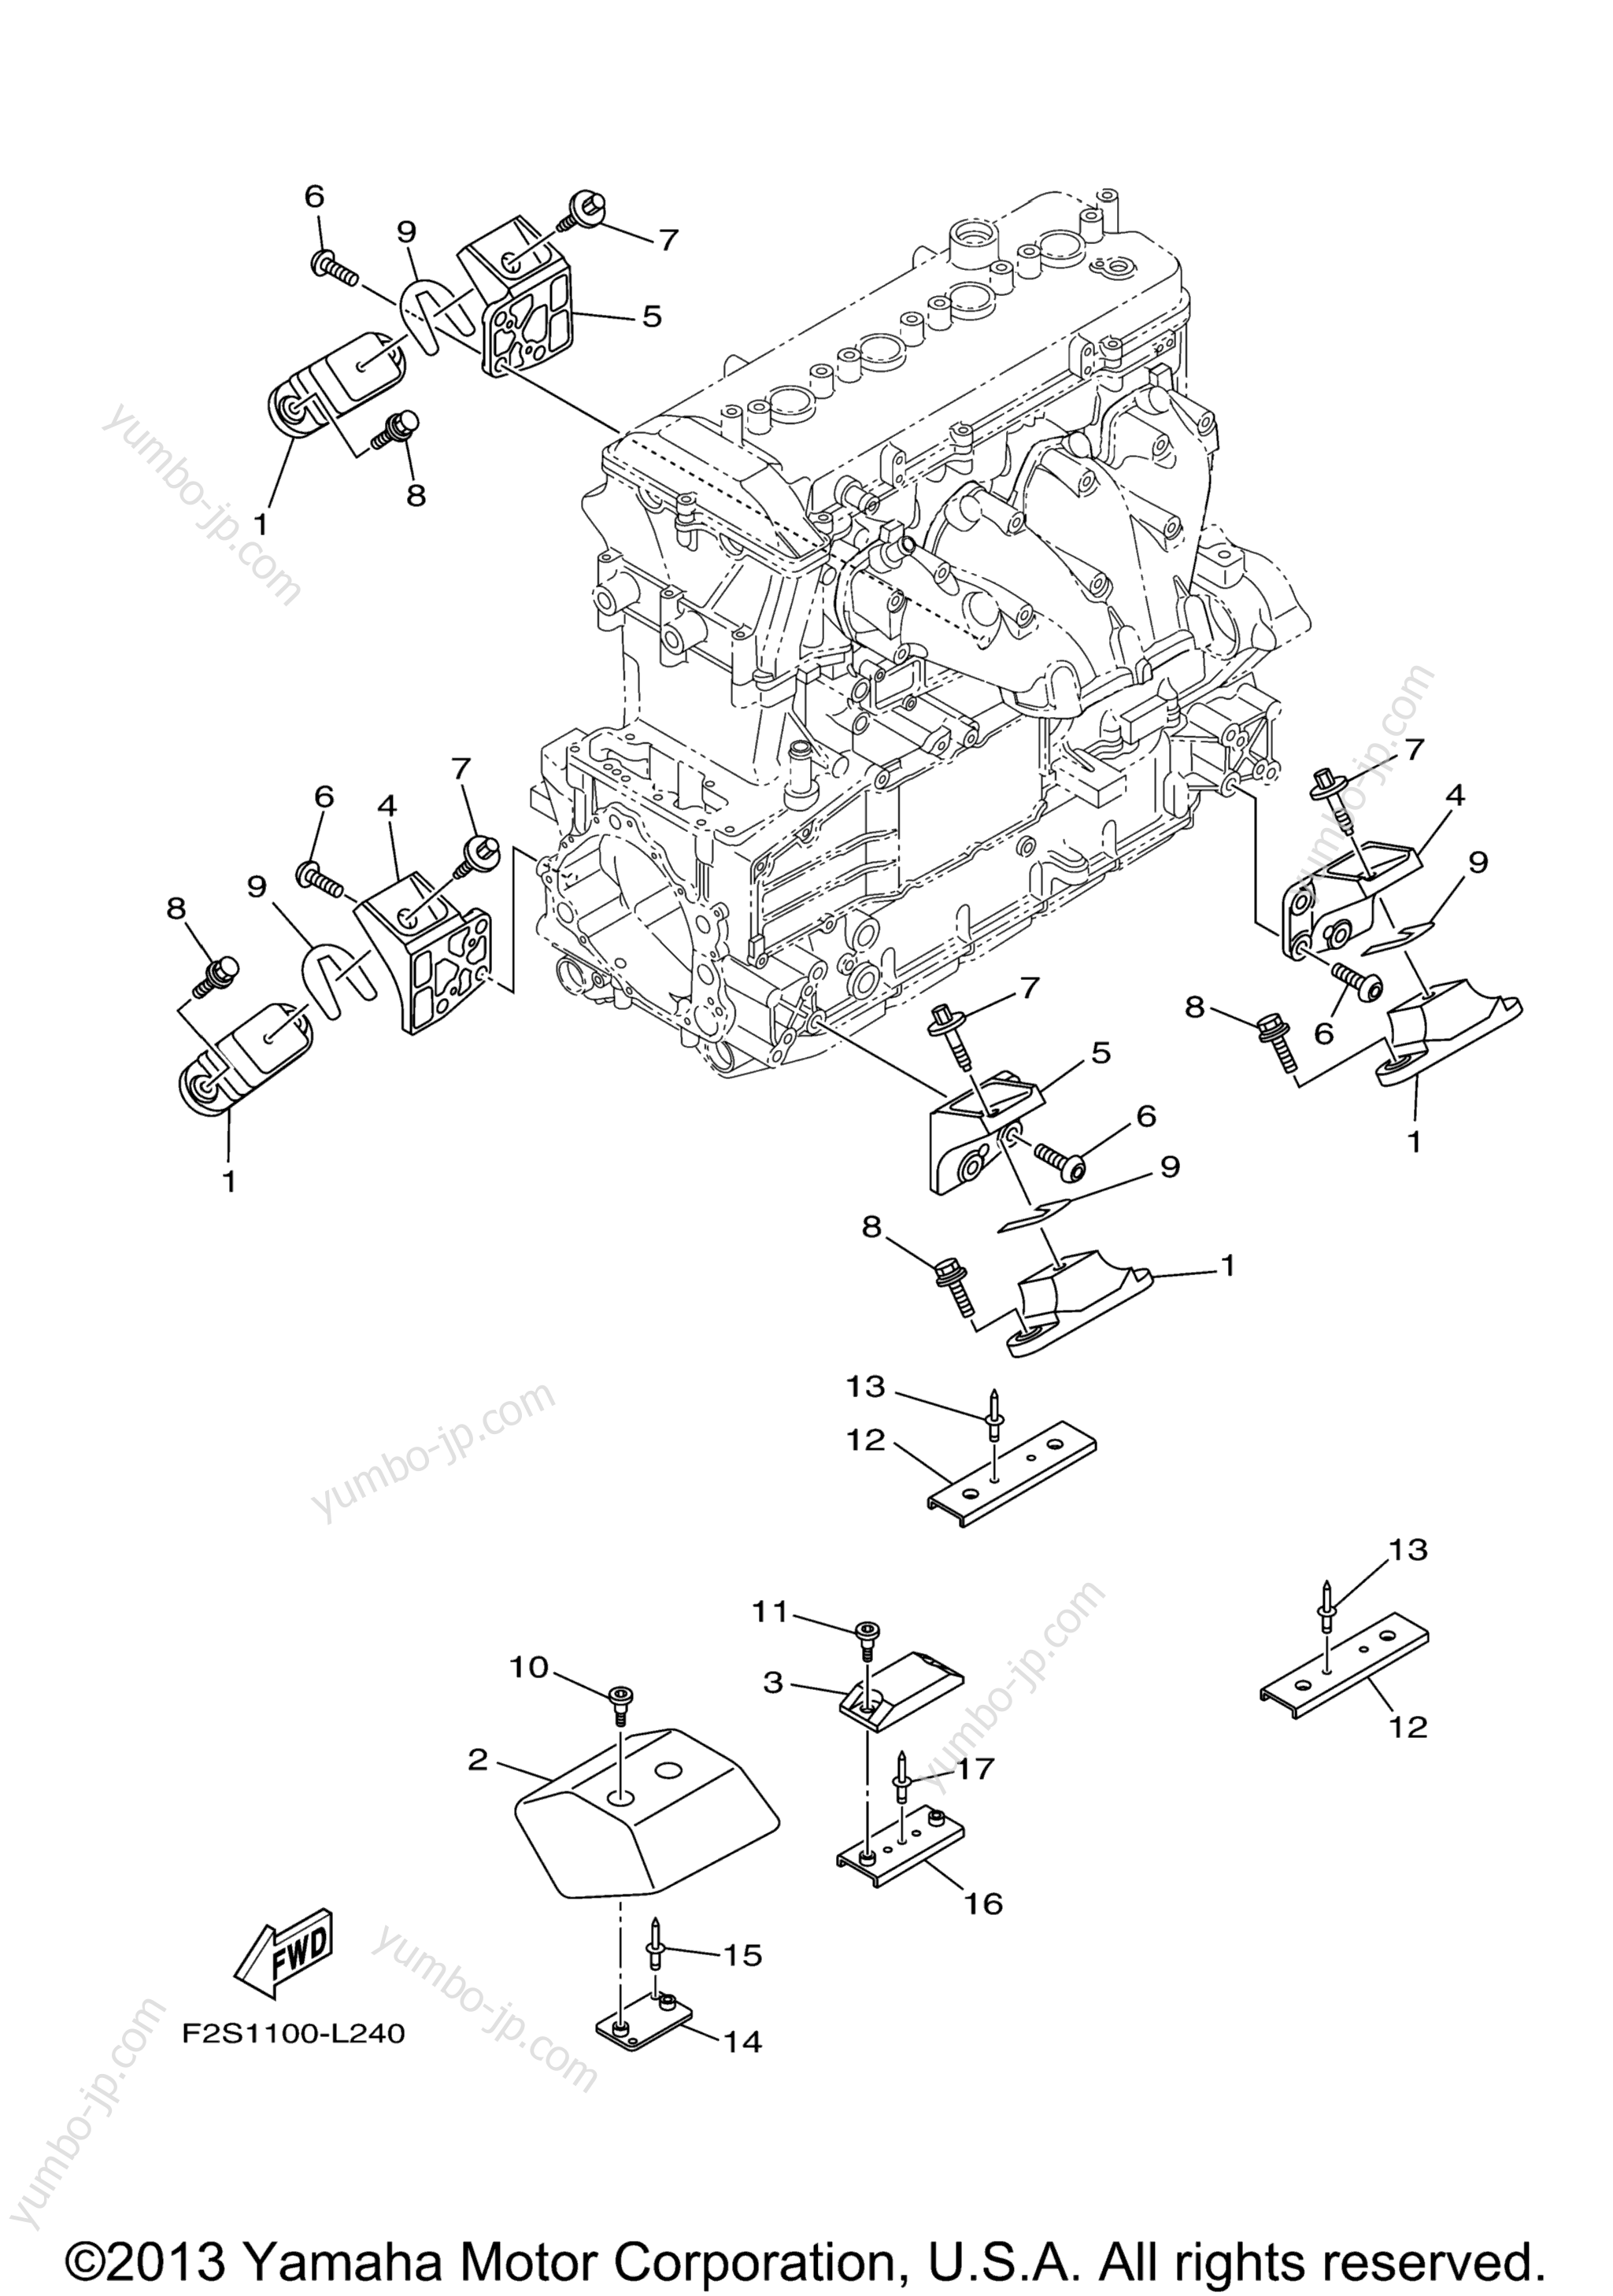 ENGINE MOUNT для гидроциклов YAMAHA FX HO (FB1800L) 2012 г.